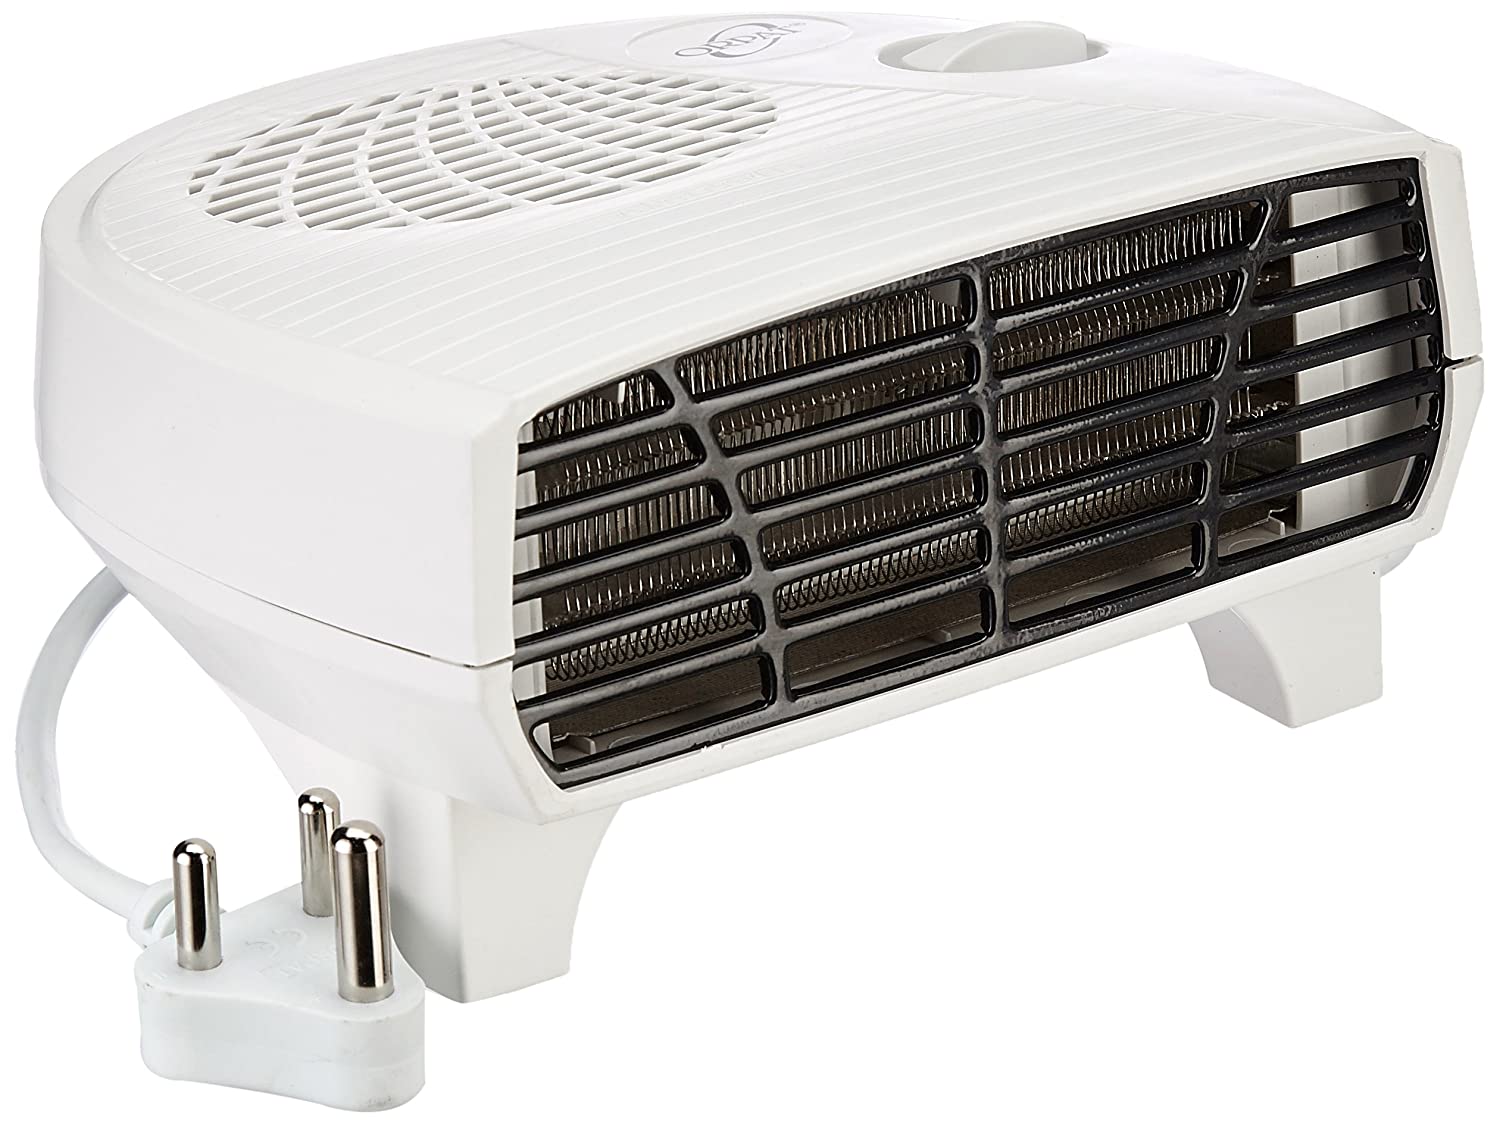 Amazon Republic Sale: बेस्ट ब्रांड के Blower Heater सेल में हजार रुपये से भी कम में खरीदें